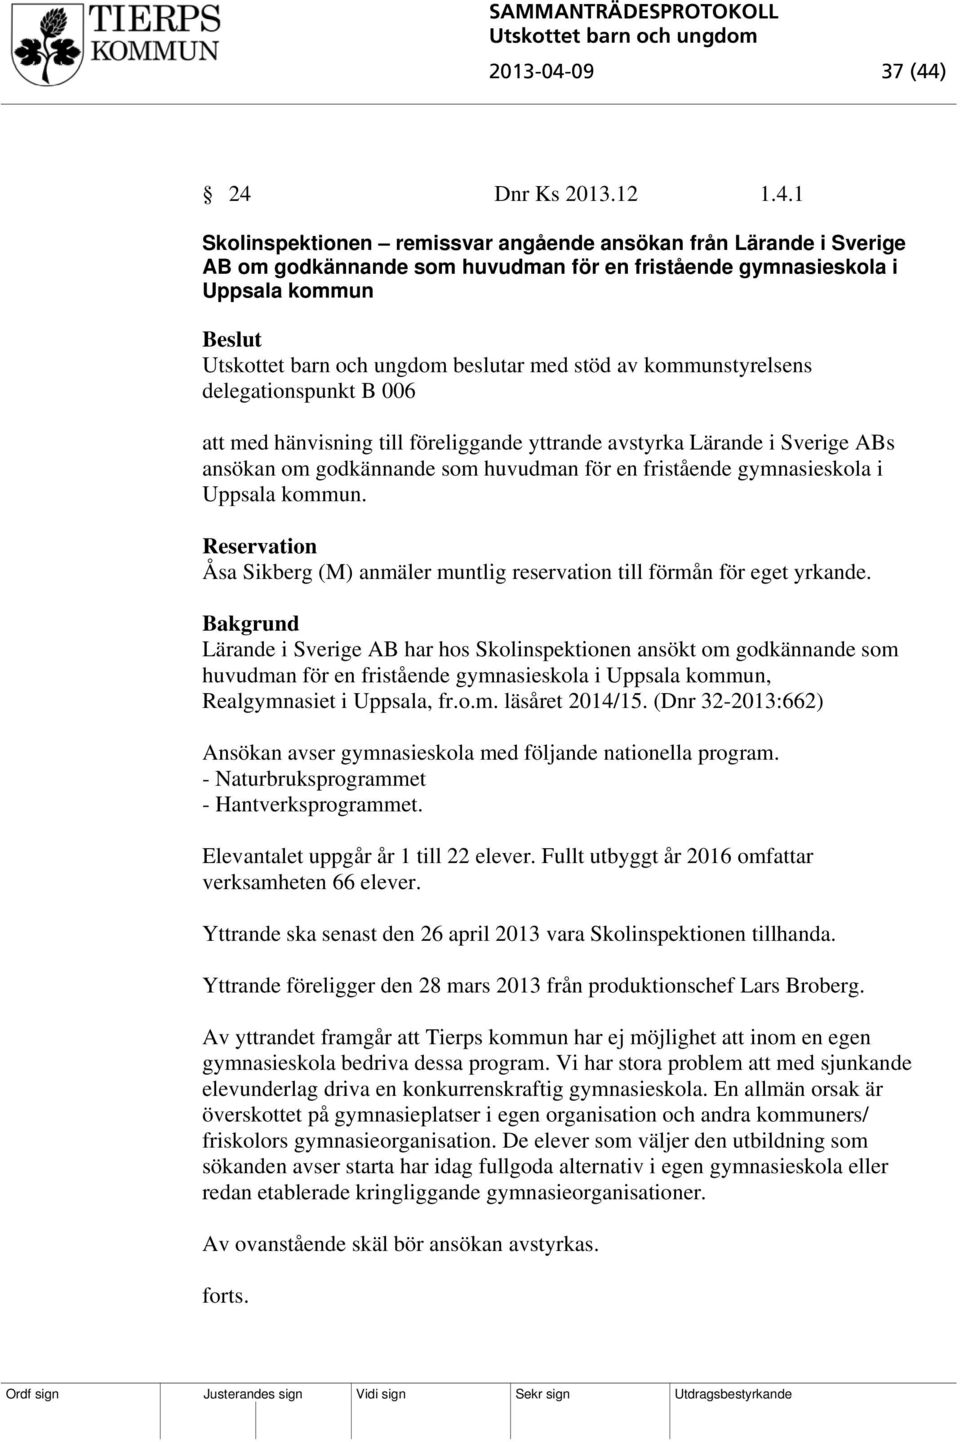 ) 24 Dnr Ks 2013.12 1.4.1 Skolinspektionen remissvar angående ansökan från Lärande i Sverige AB om godkännande som huvudman för en fristående gymnasieskola i Uppsala kommun beslutar med stöd av